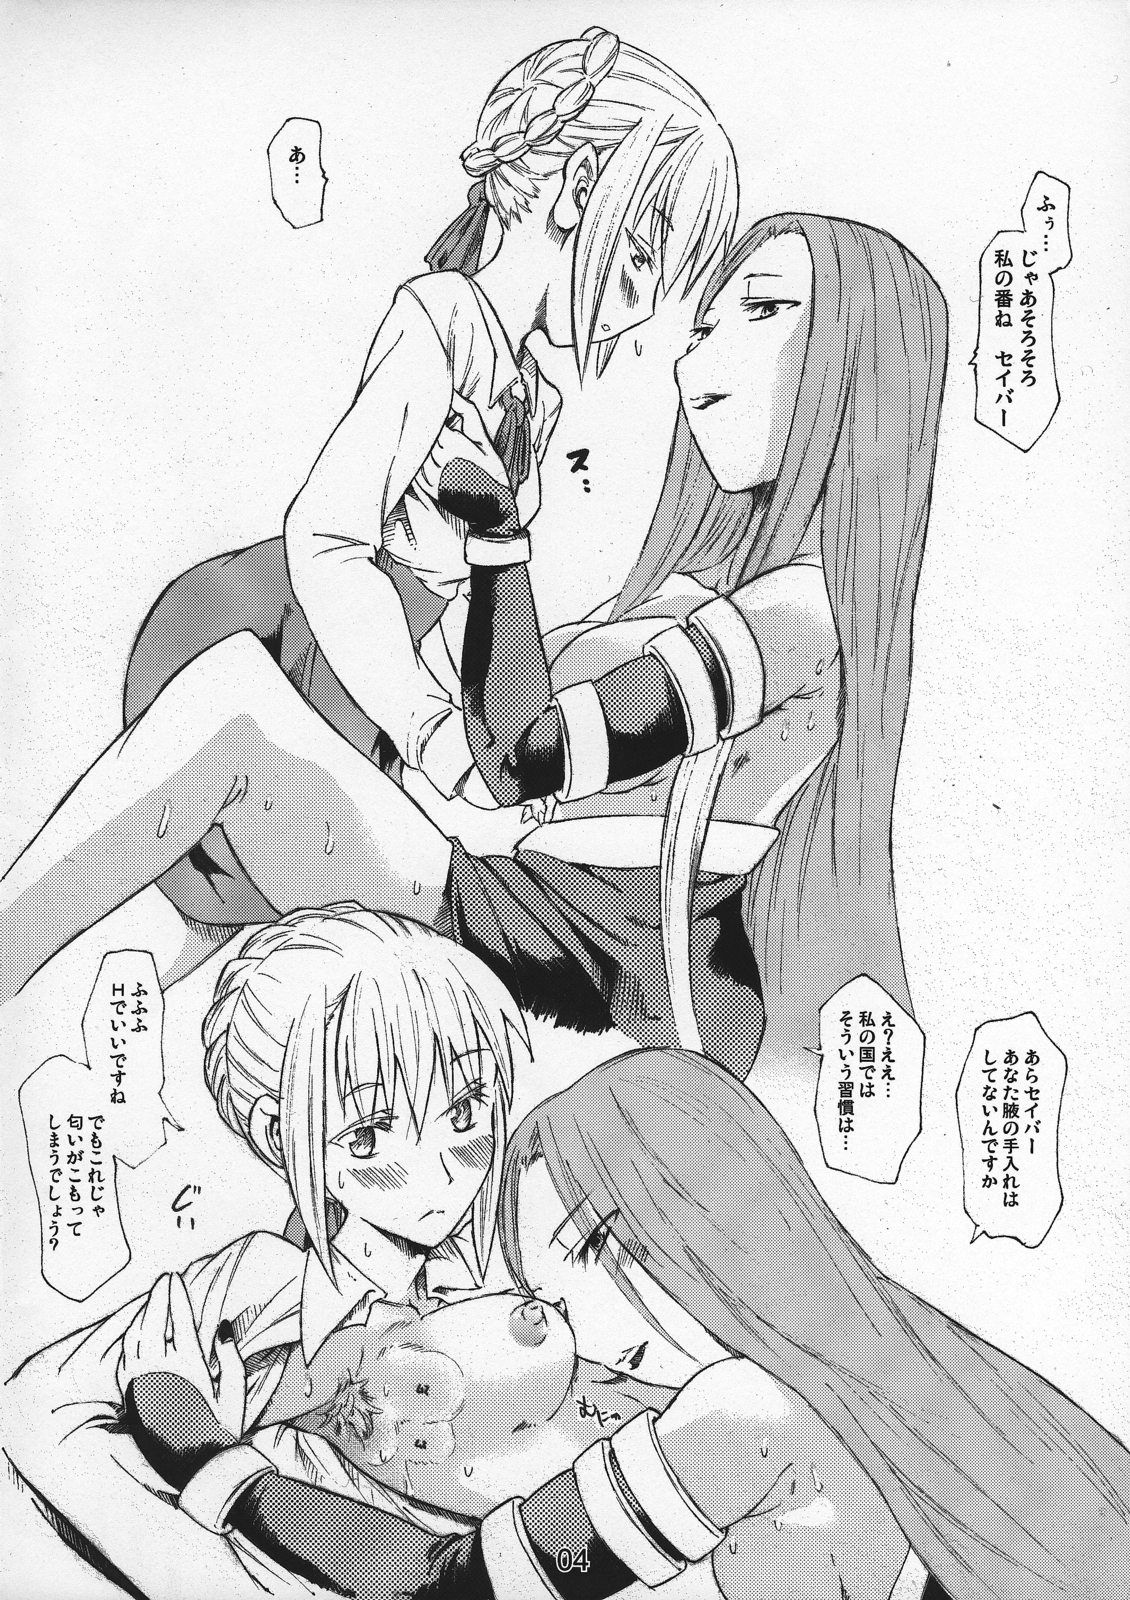 (SC31) [TTT (Miharu)] feti saber rider (Fate/stay night) page 4 full